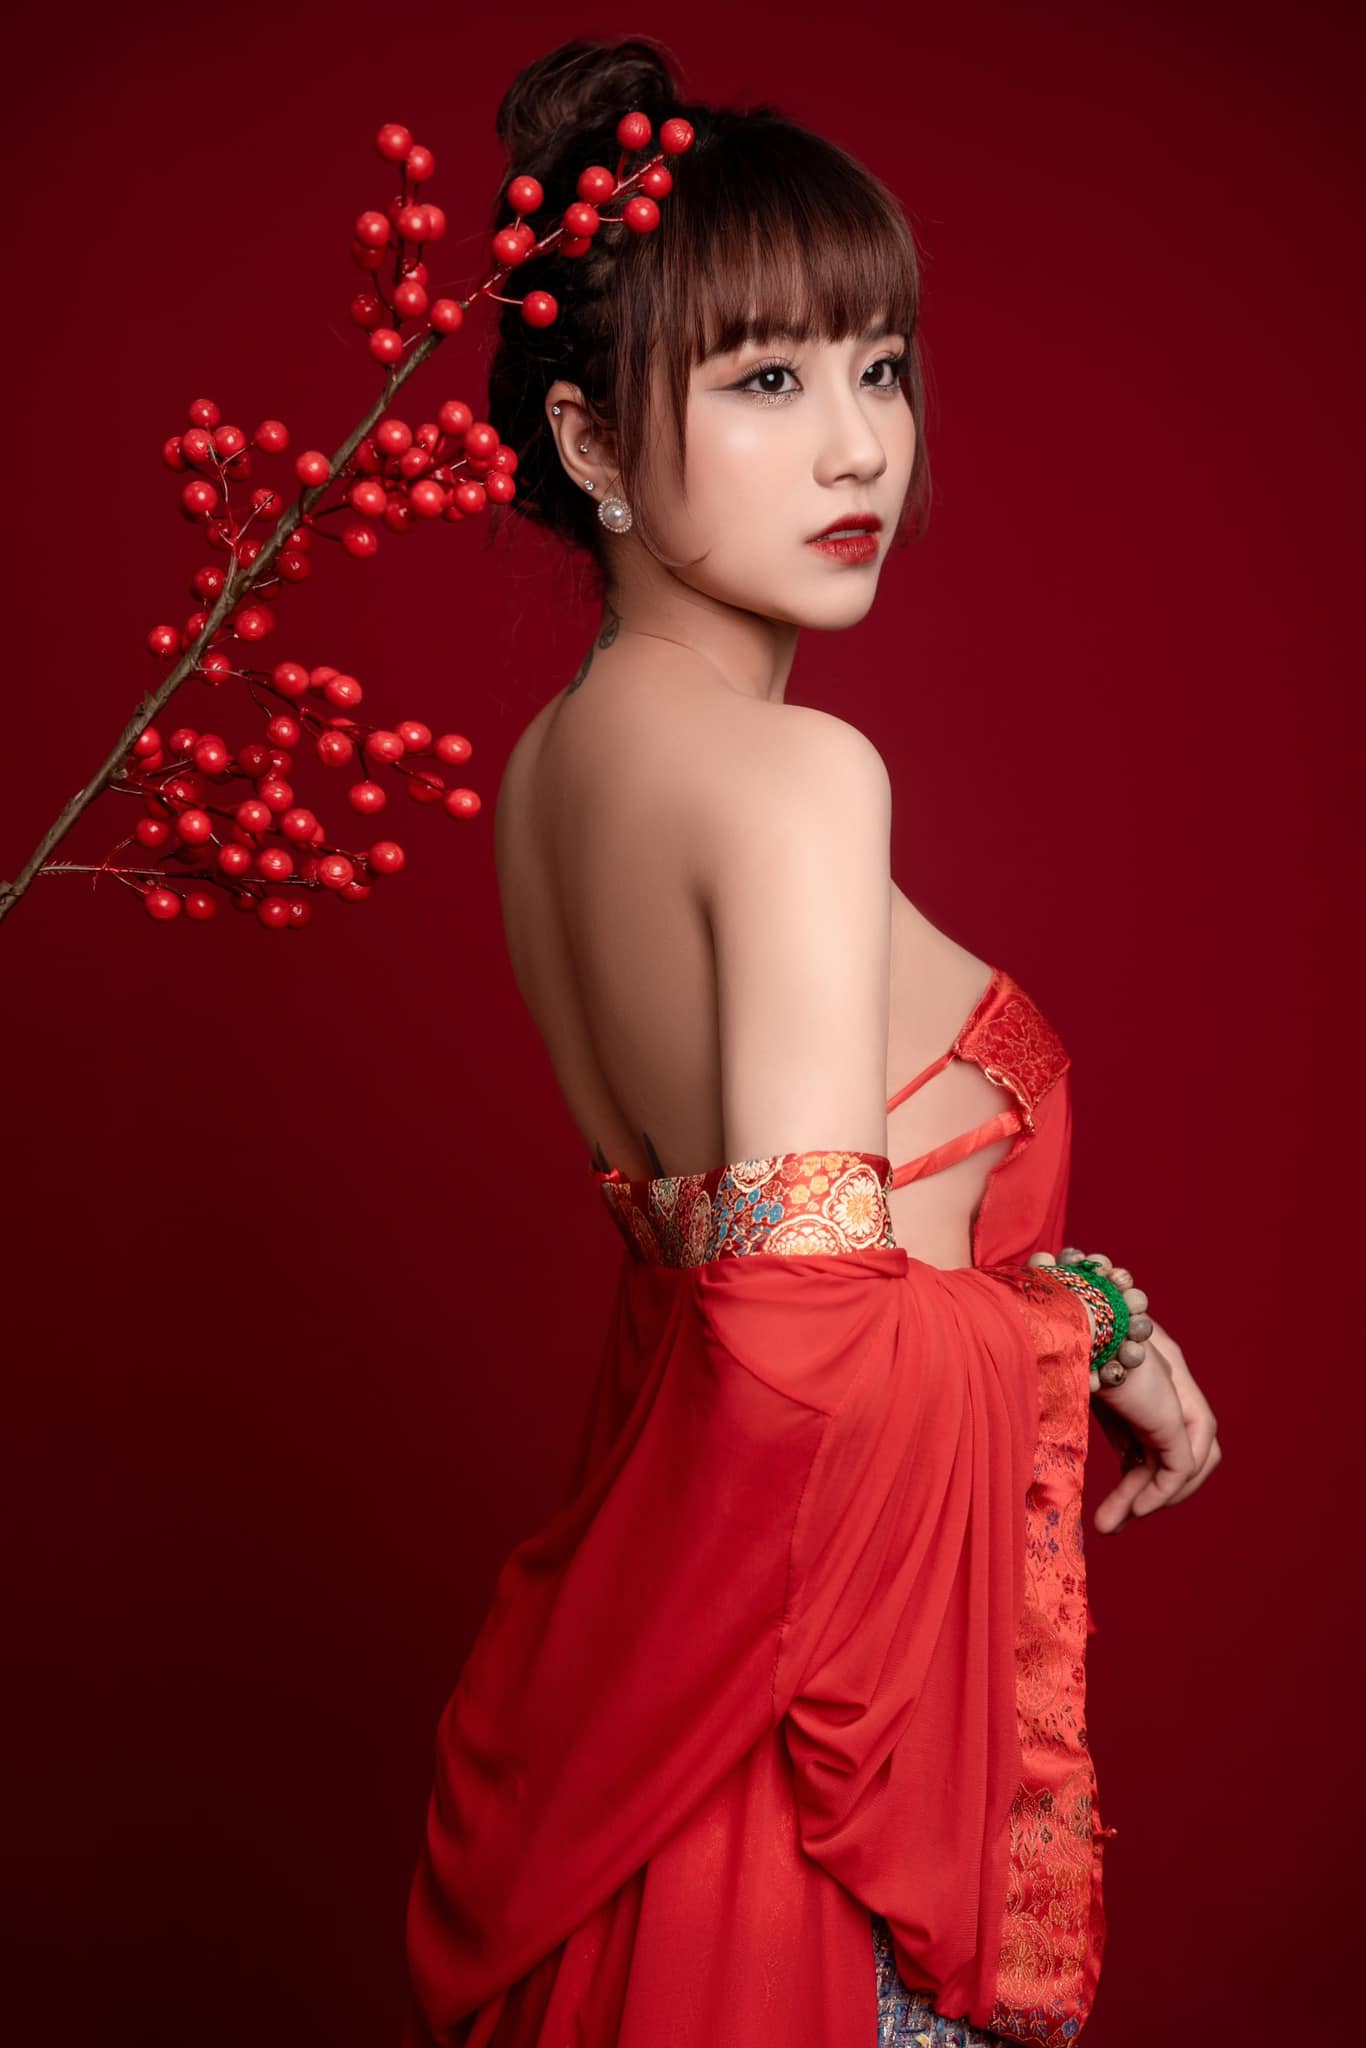 Linh Miu phủ nhận nghi vấn là nhân vật chính trong clip nhạy cảm.